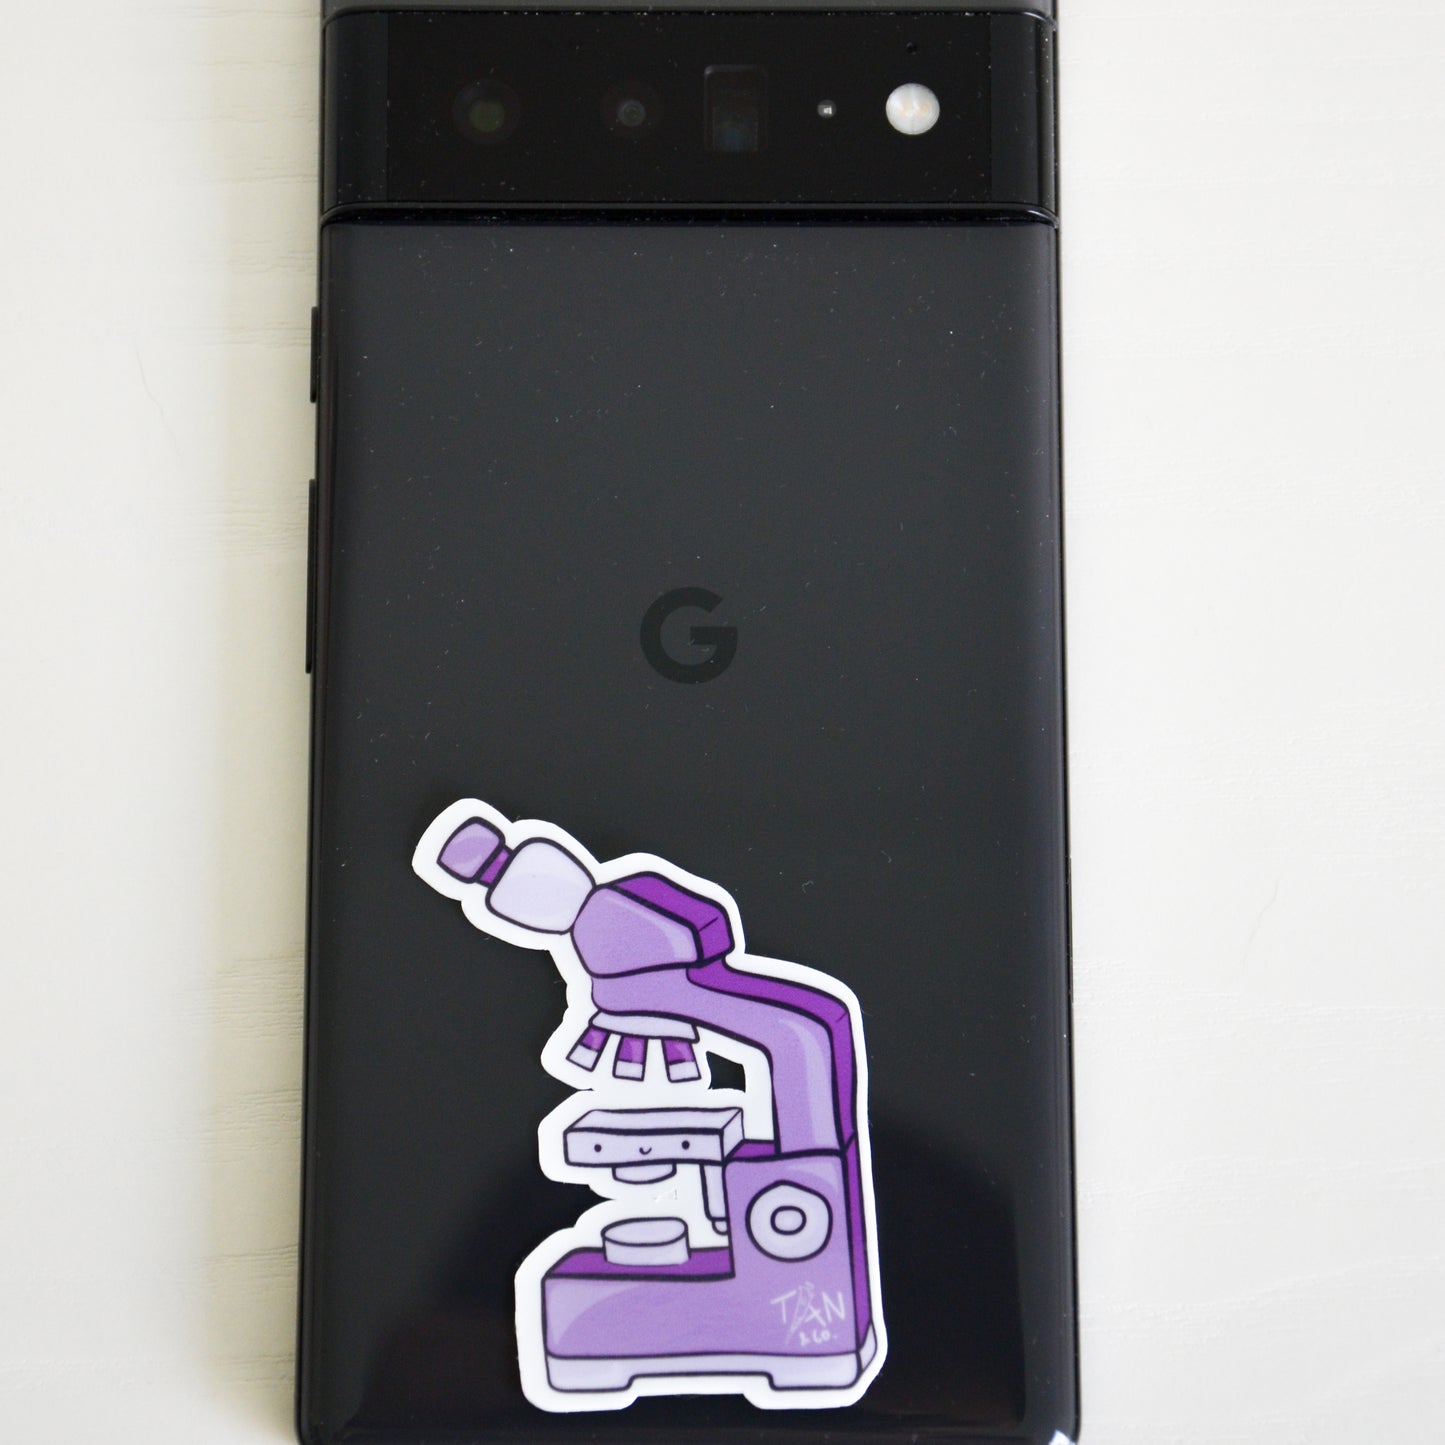 Purple microscope sticker on phone